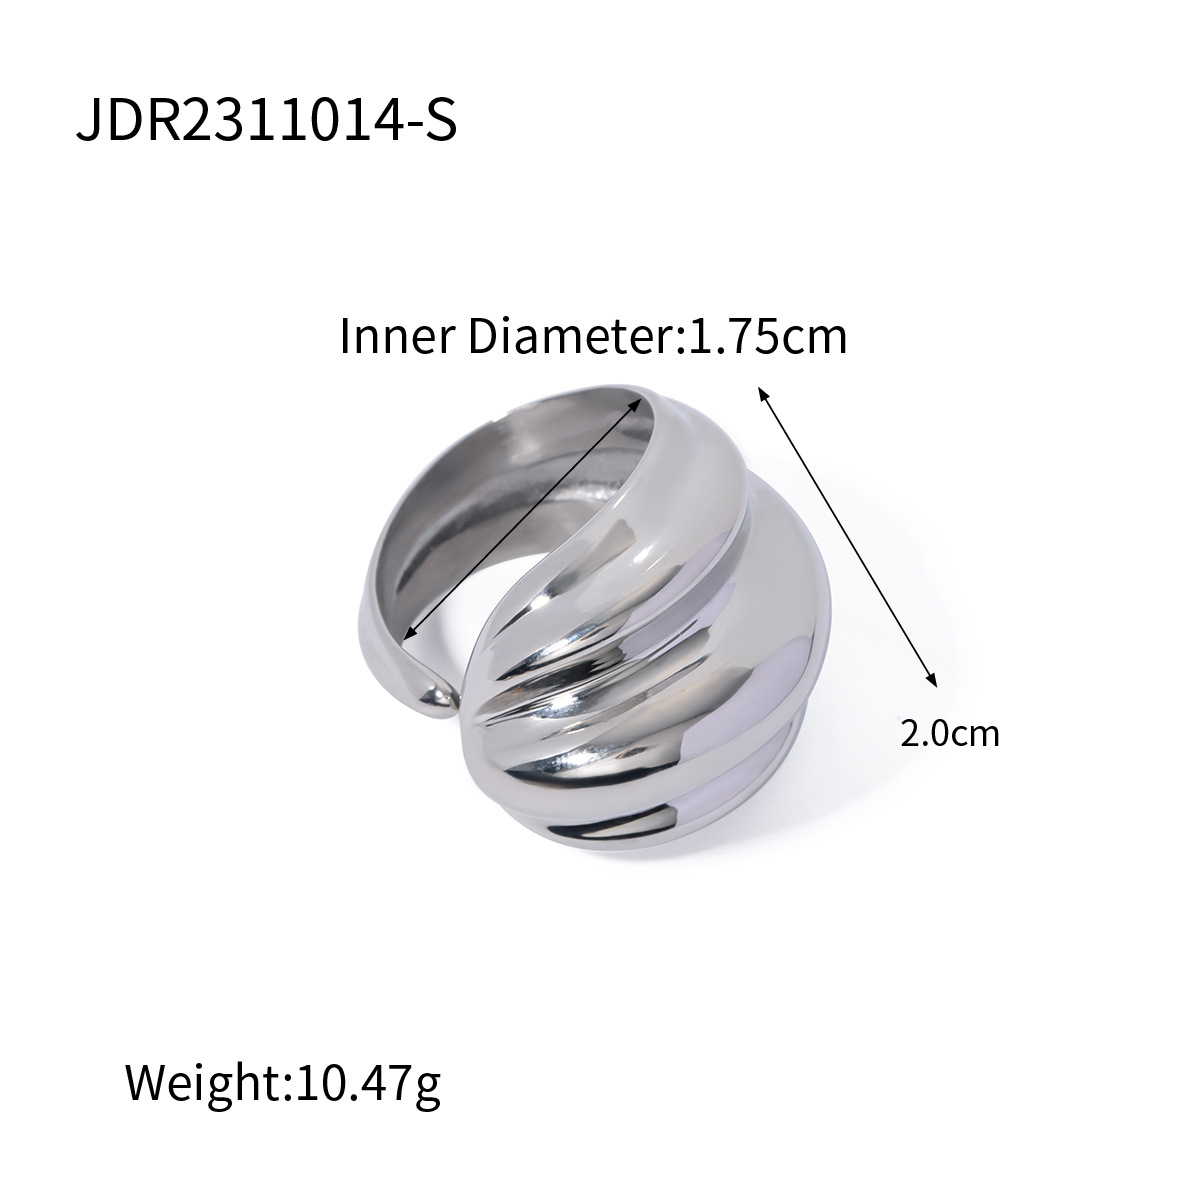 JDR2311014-S